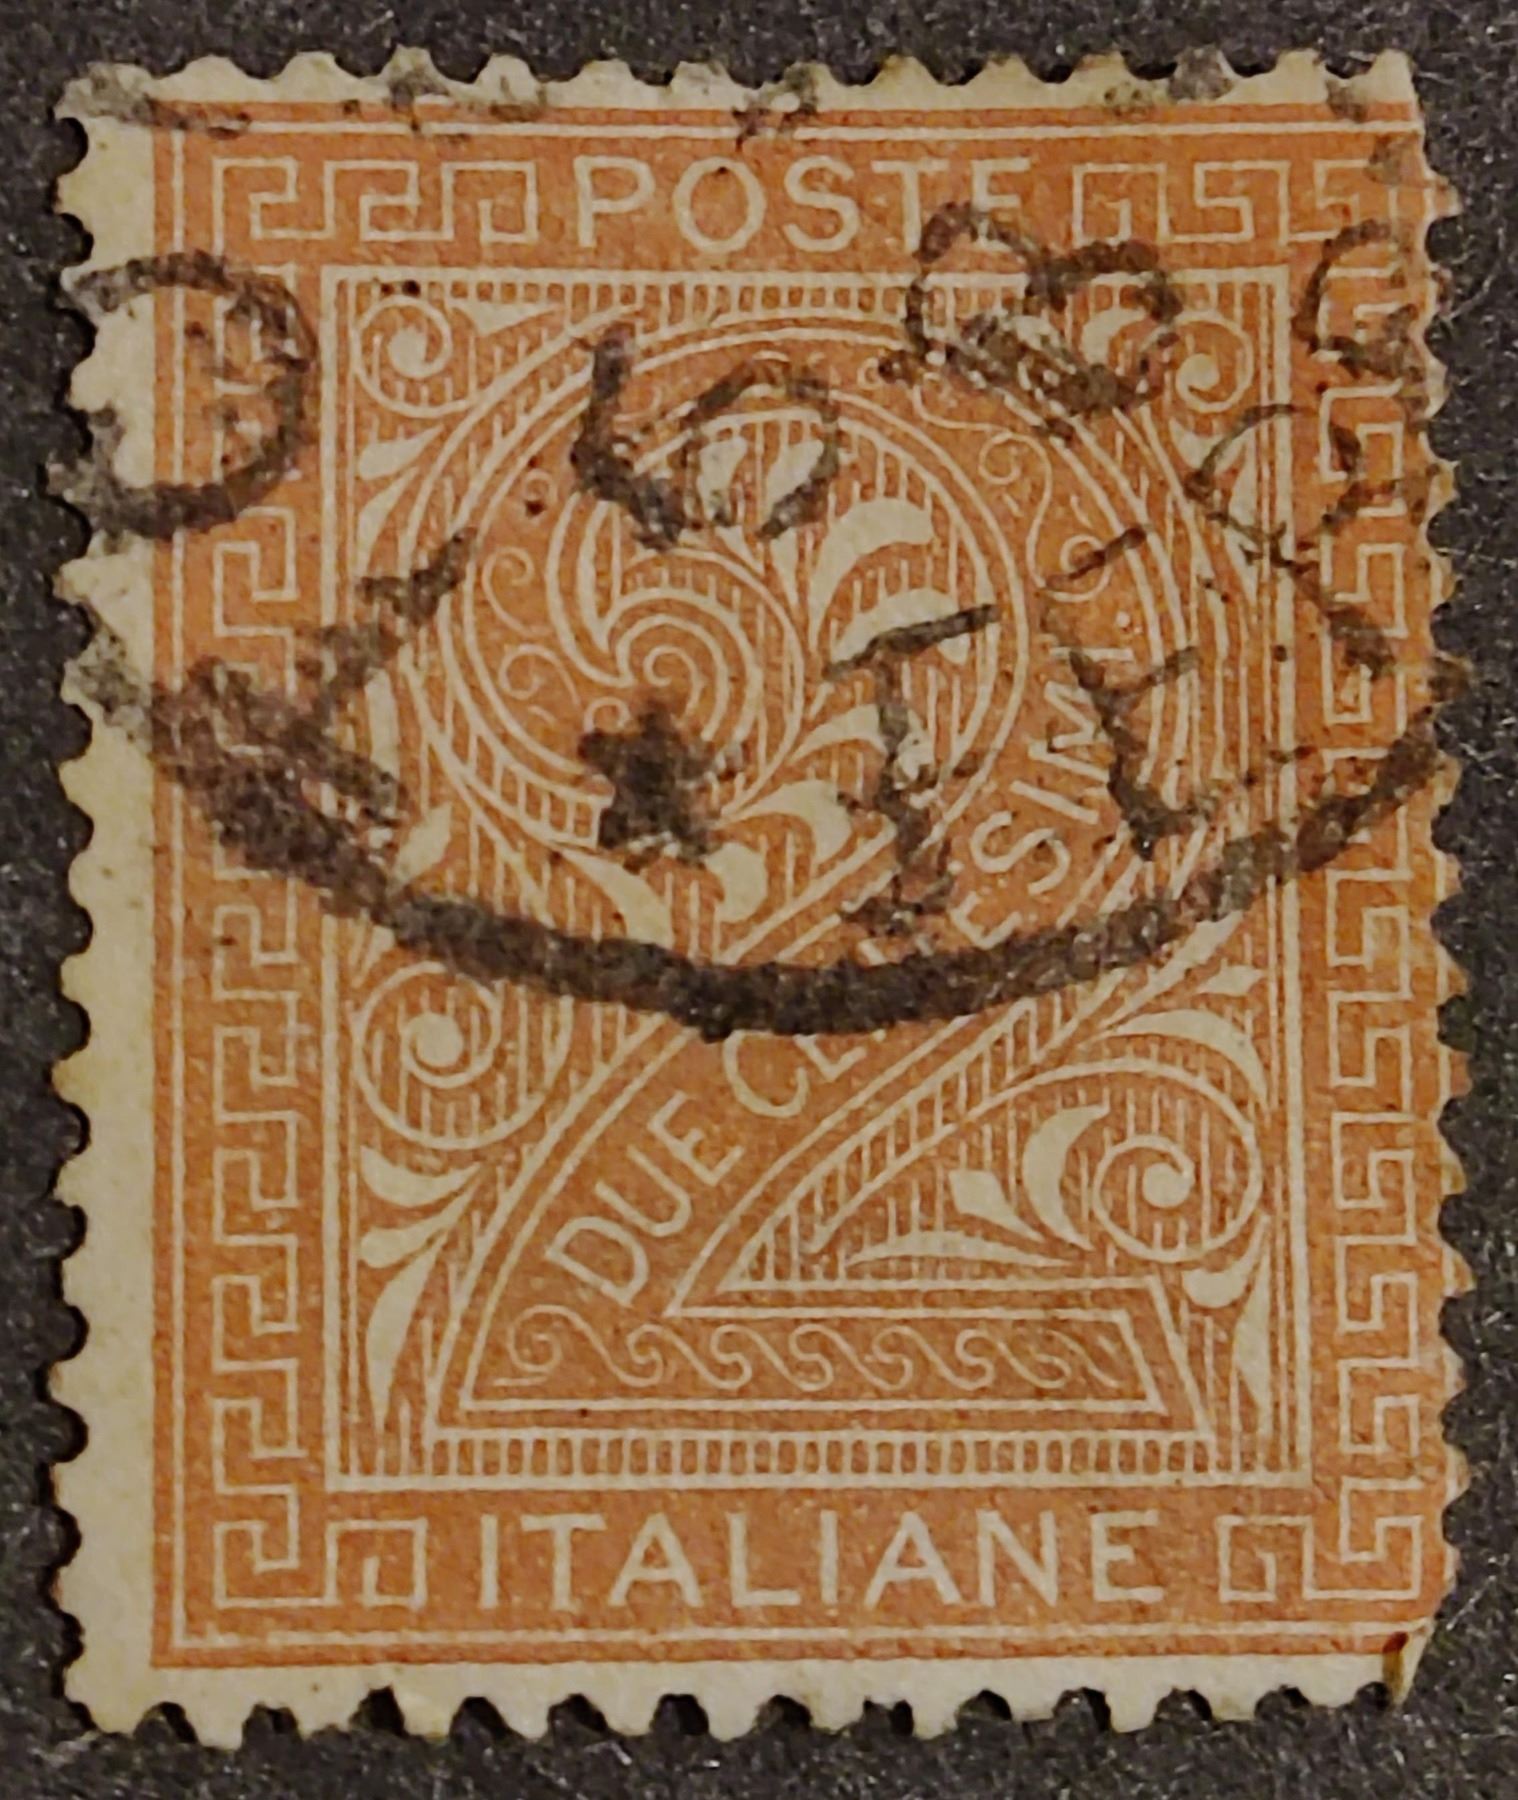 1863 Italian 2 Centesimi de la rue stamp.